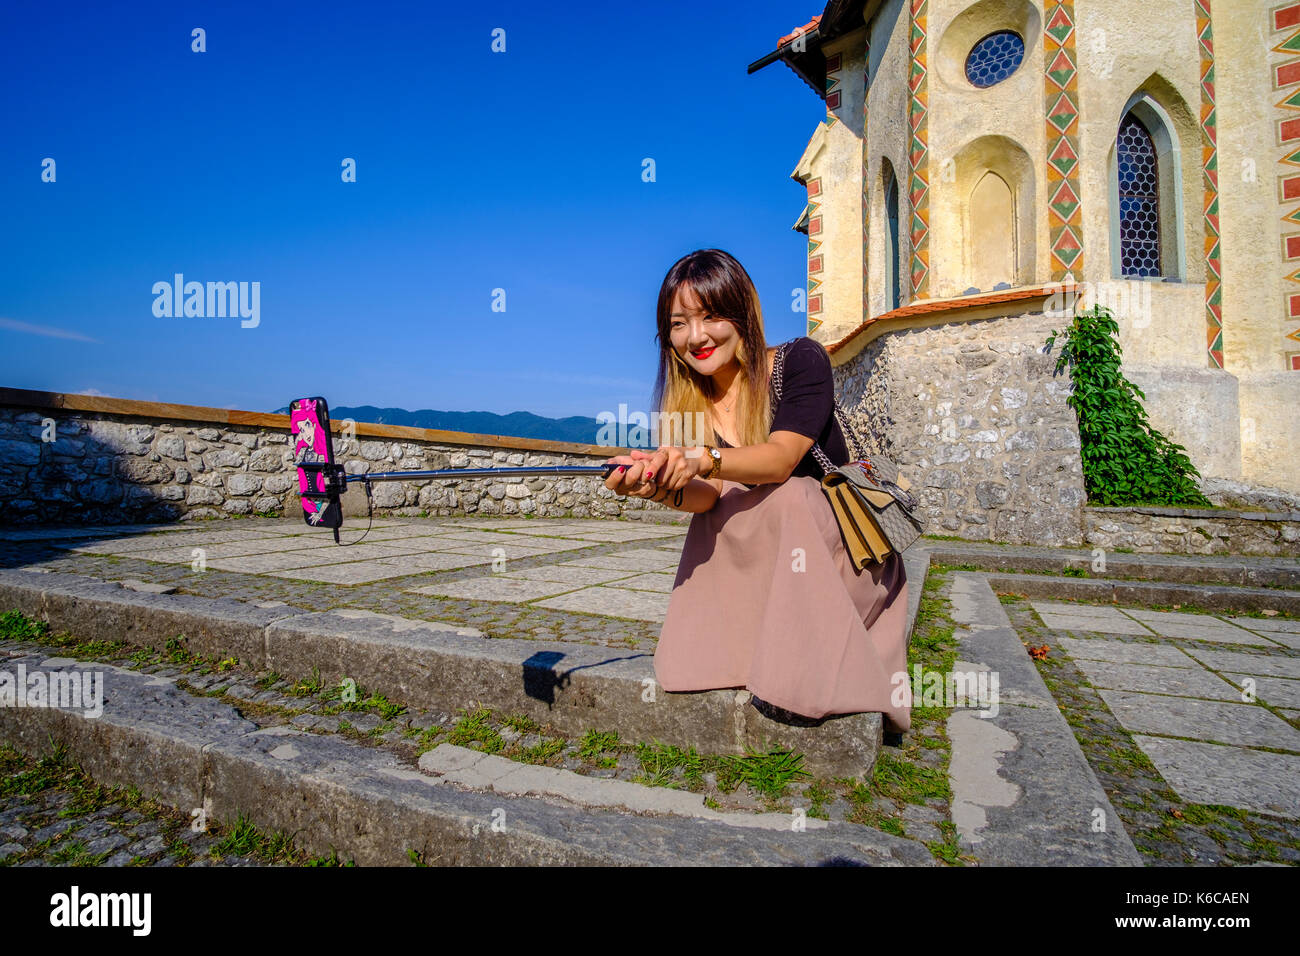 Un turista cinese donna sta prendendo un selfie all'interno del castello di Bled, blejski grad, situato su una montagna rocciosa alta al di sopra del lago di Bled, blejsko jezero Foto Stock